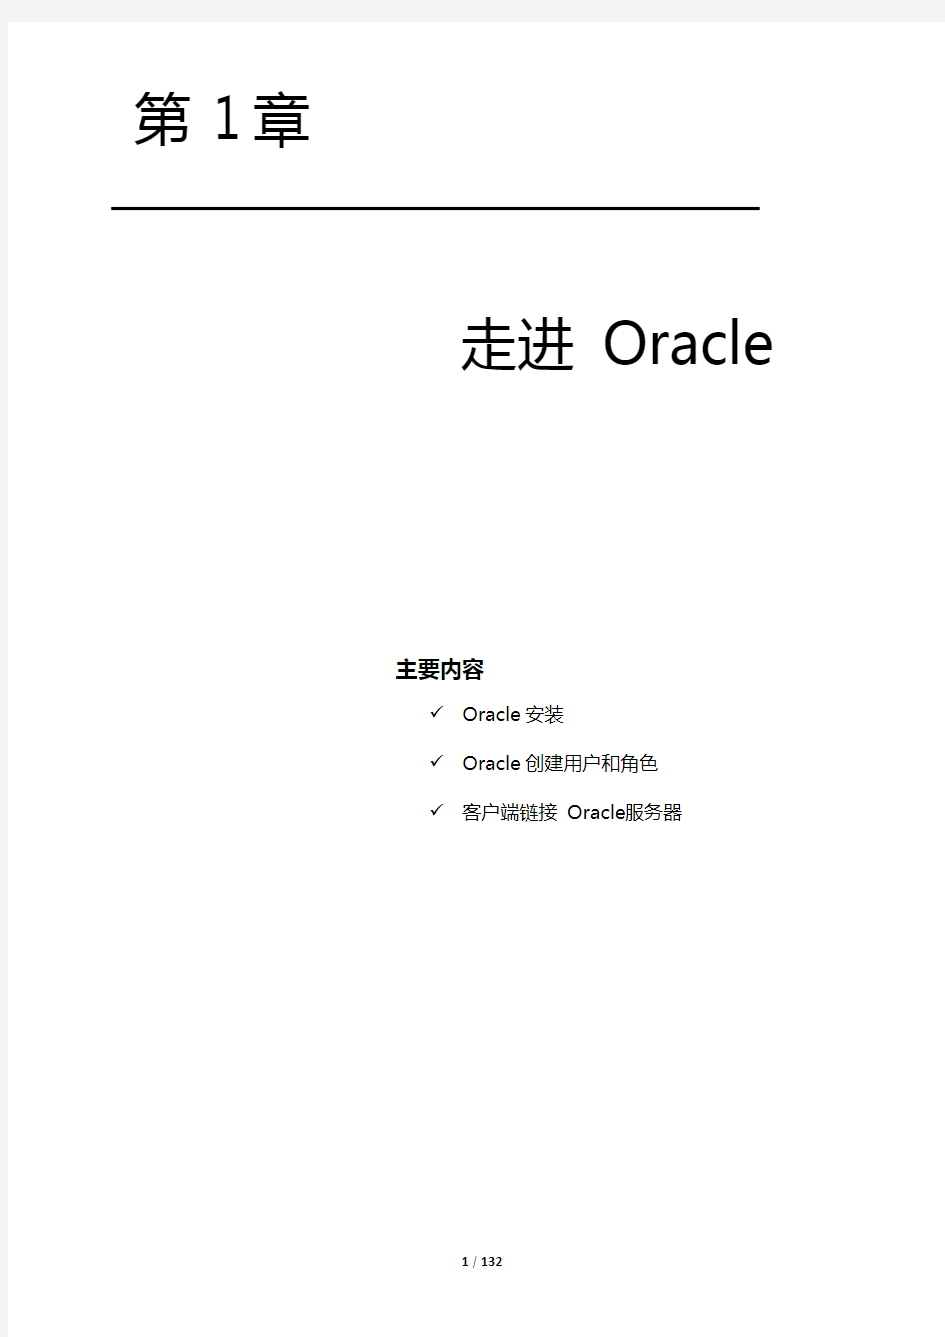 Oracle经典教程